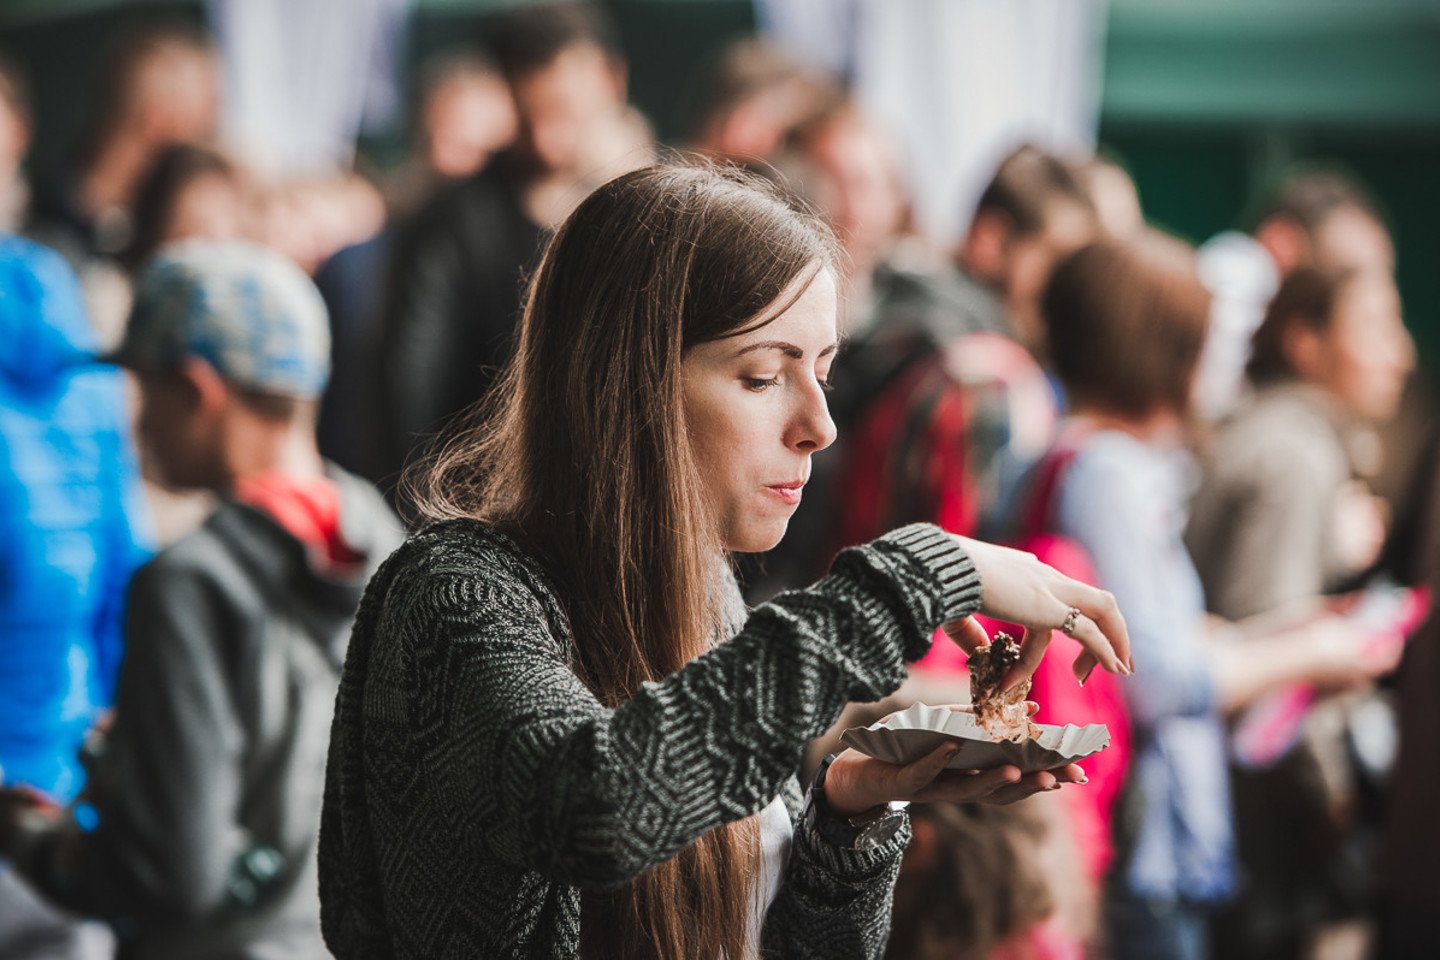 Didelio populiarumo sulaukęs masinis „Borjomi Grill piknikas“ šiais metais uostamiestyje pritraukė dar daugiau iškylautojų.<br>E.Sabaliauskaitės nuotr.